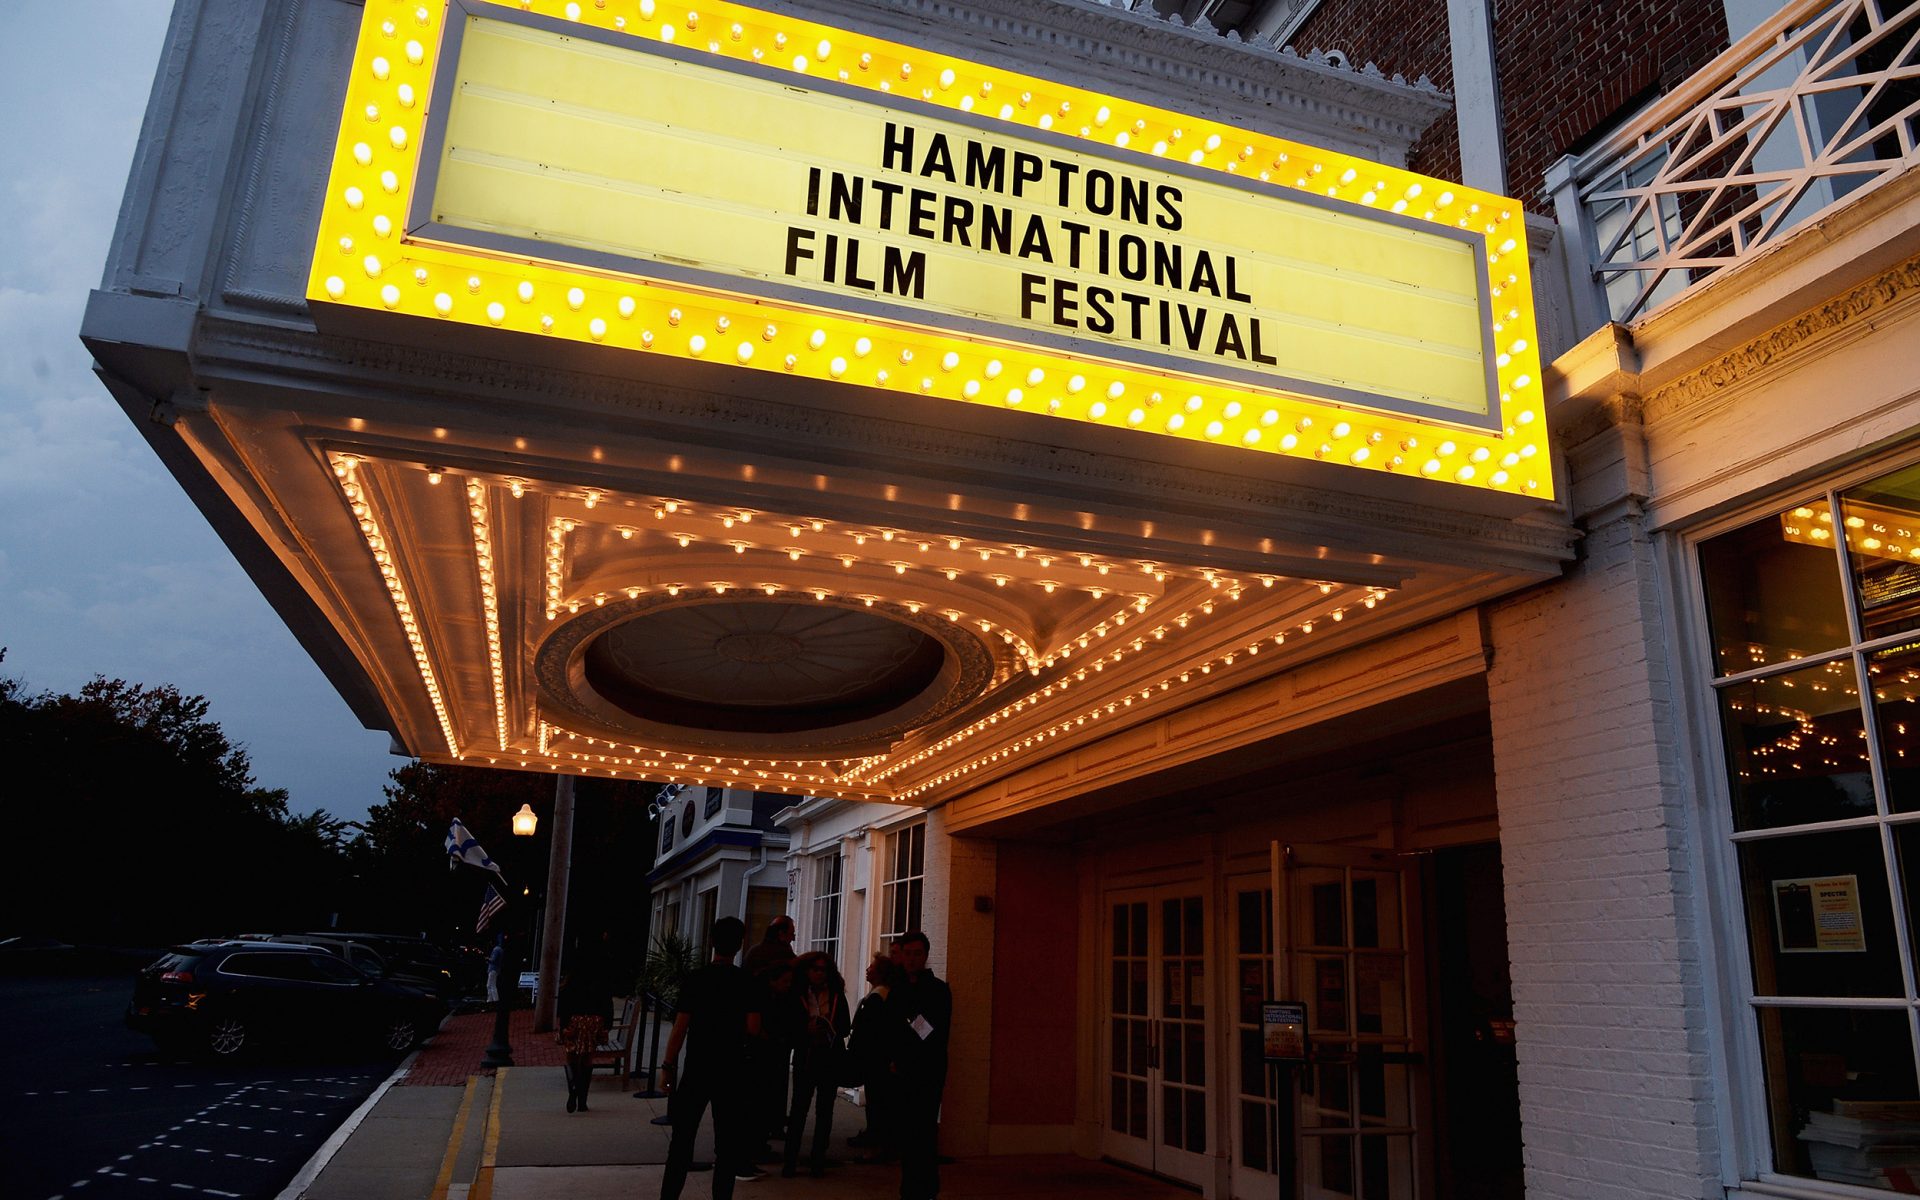 Hamptons International Film Festival, October 10 - 14